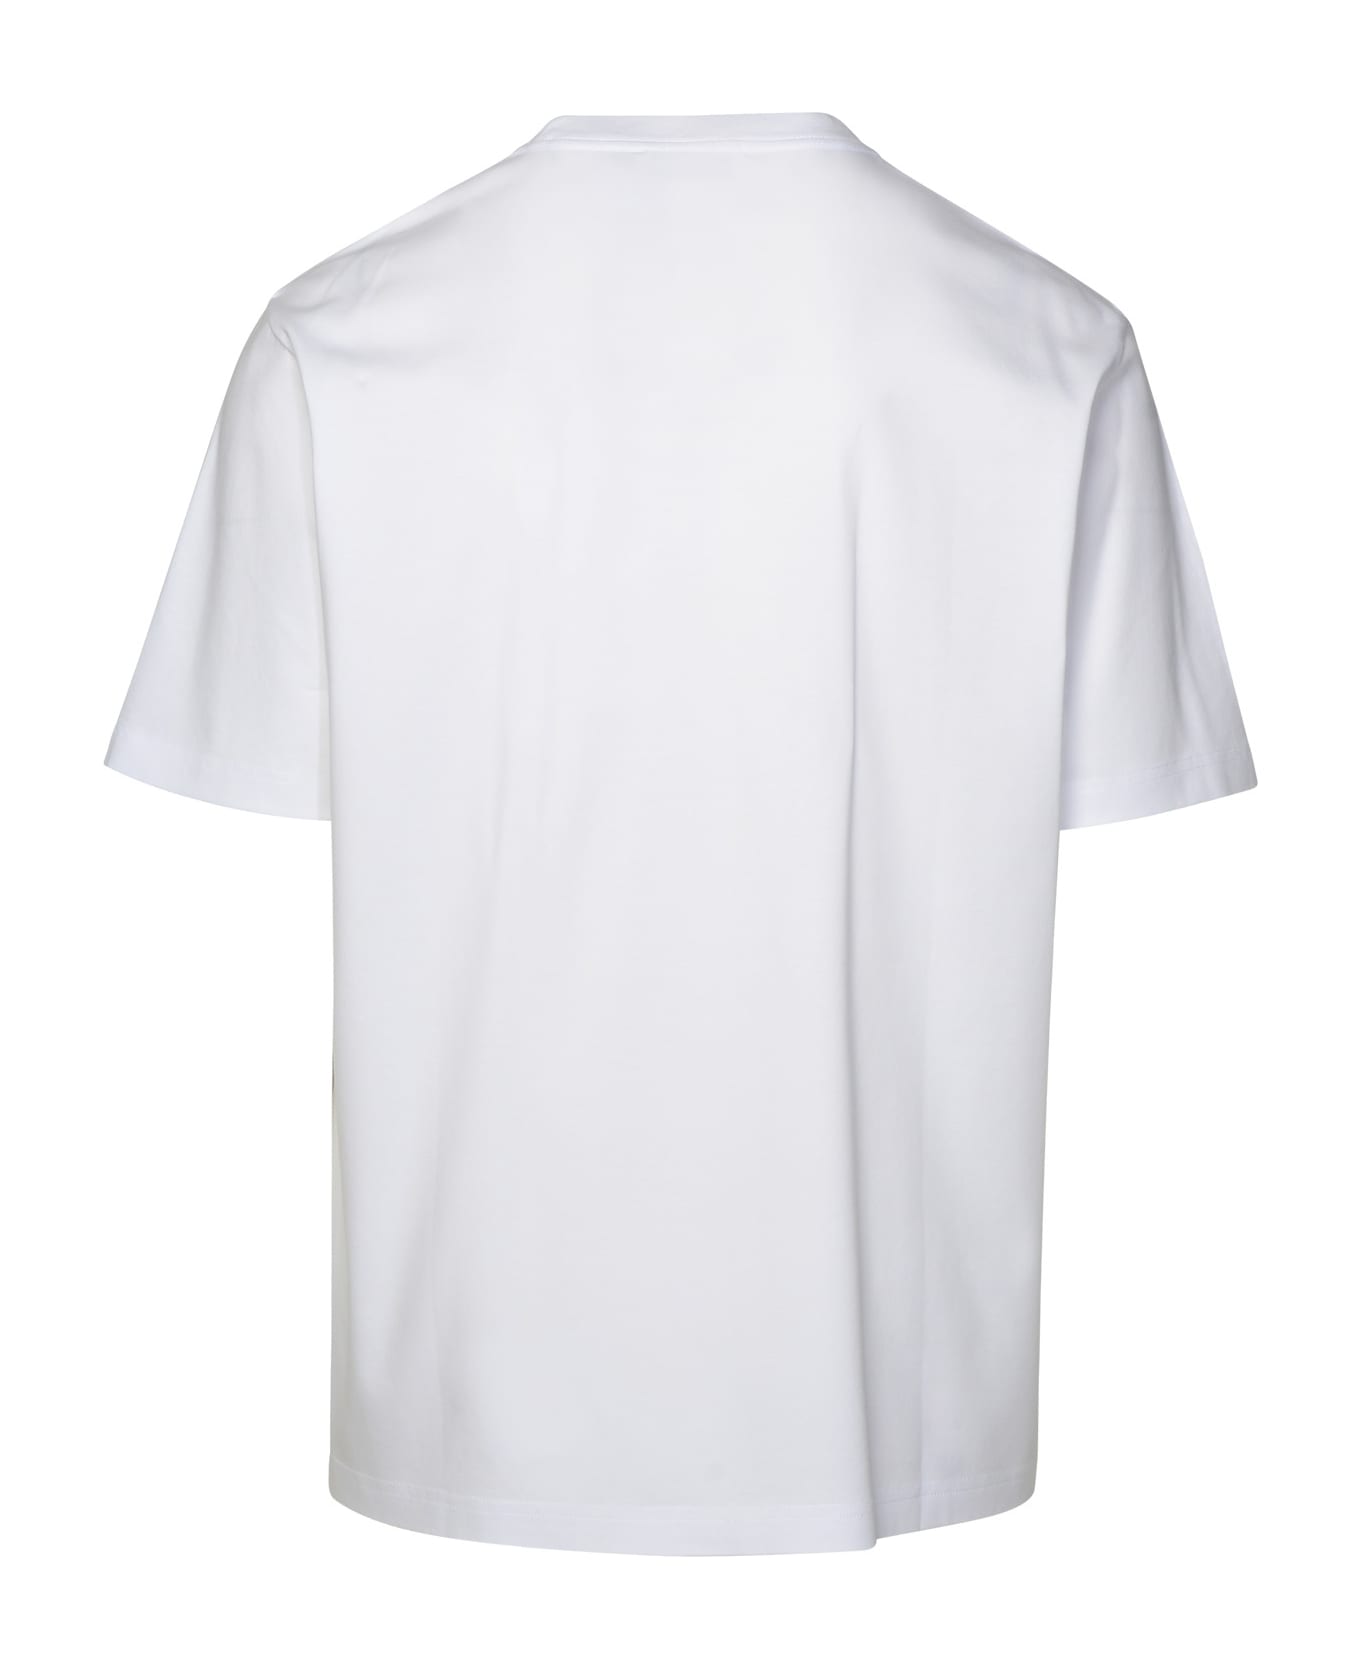 Lanvin White Cotton T-shirt - Bianco